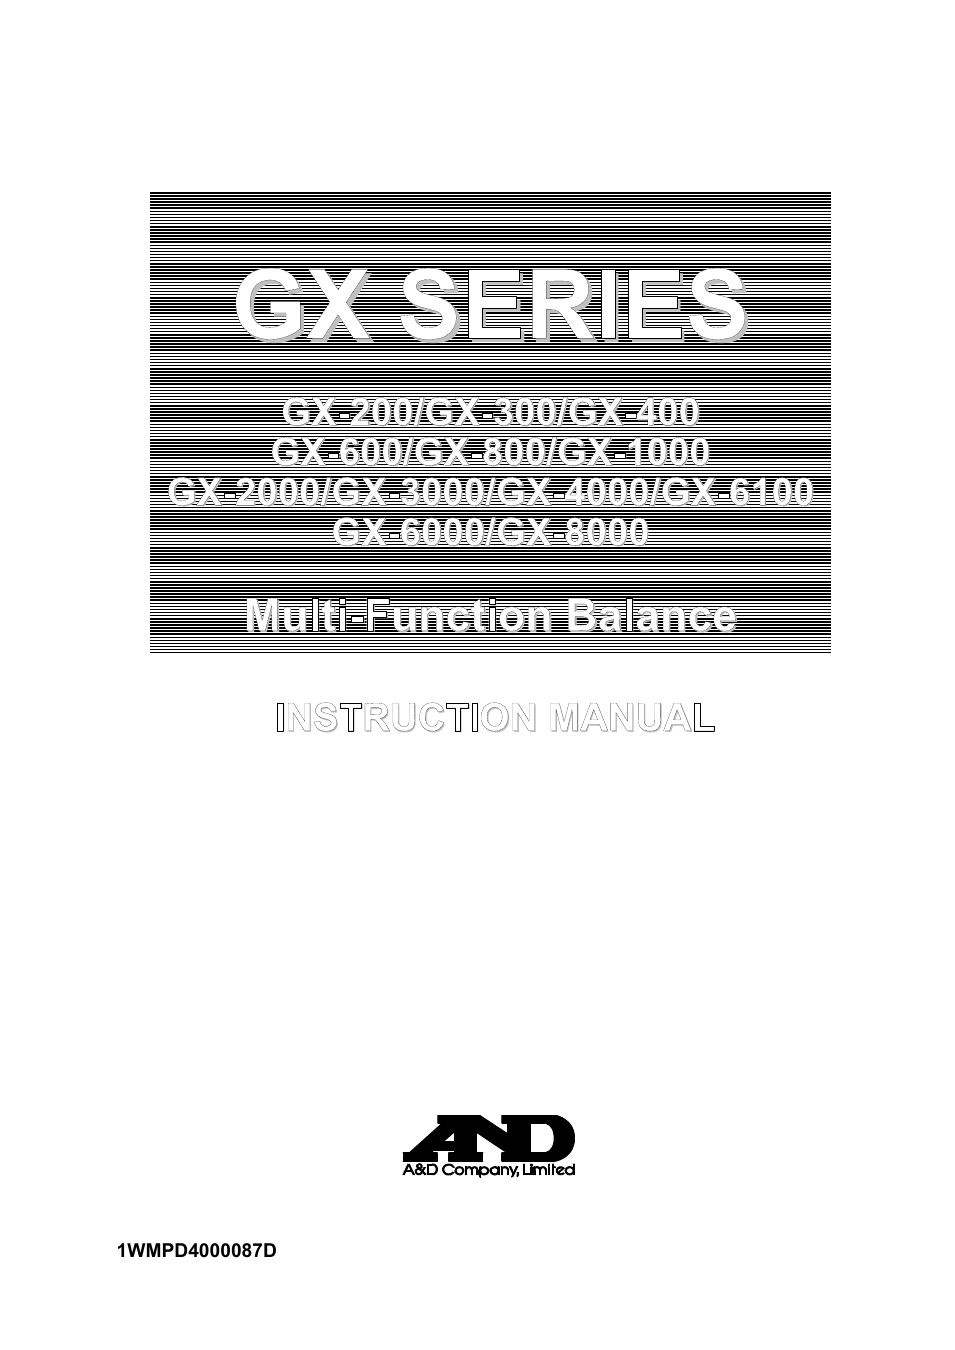 GX-800